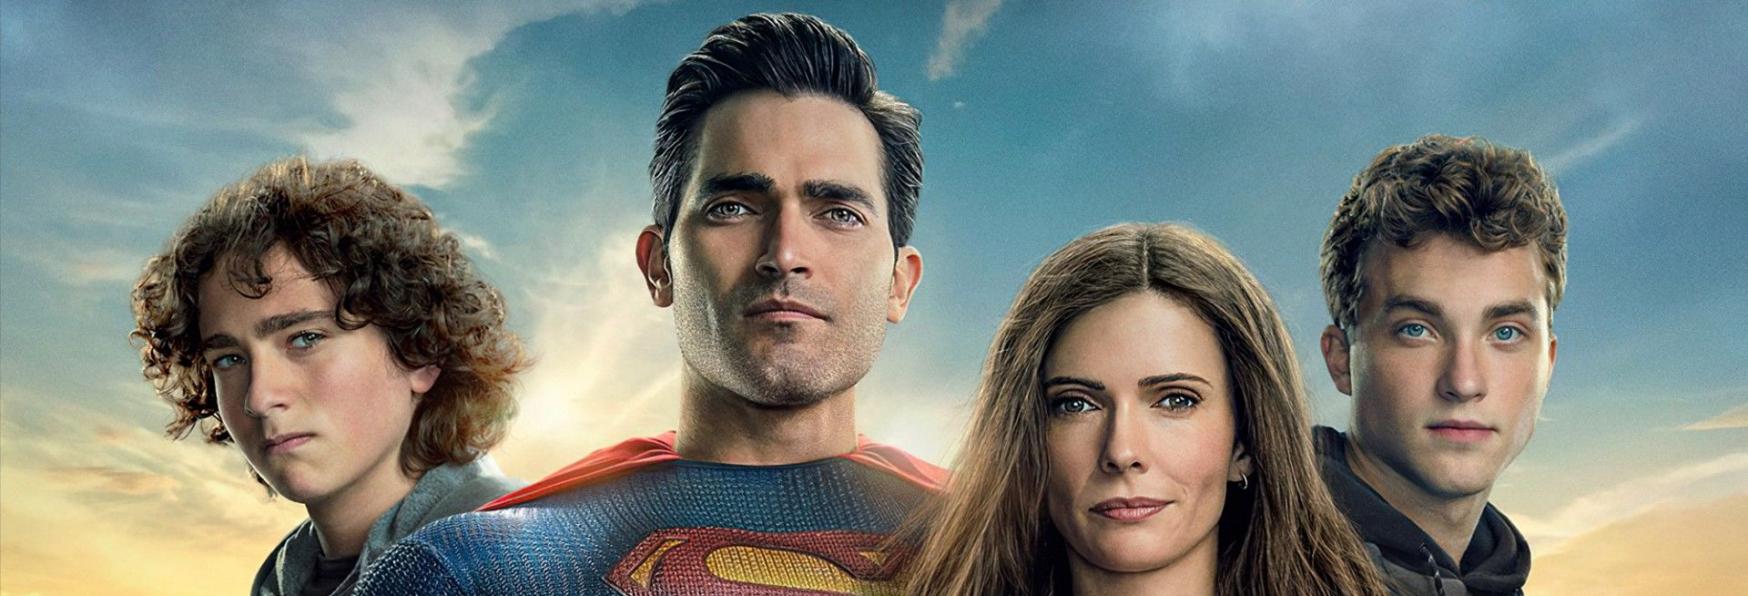 Superman & Lois 2x15: The CW rilascia le Immagini del Finale di Stagione, “Waiting for Superman”